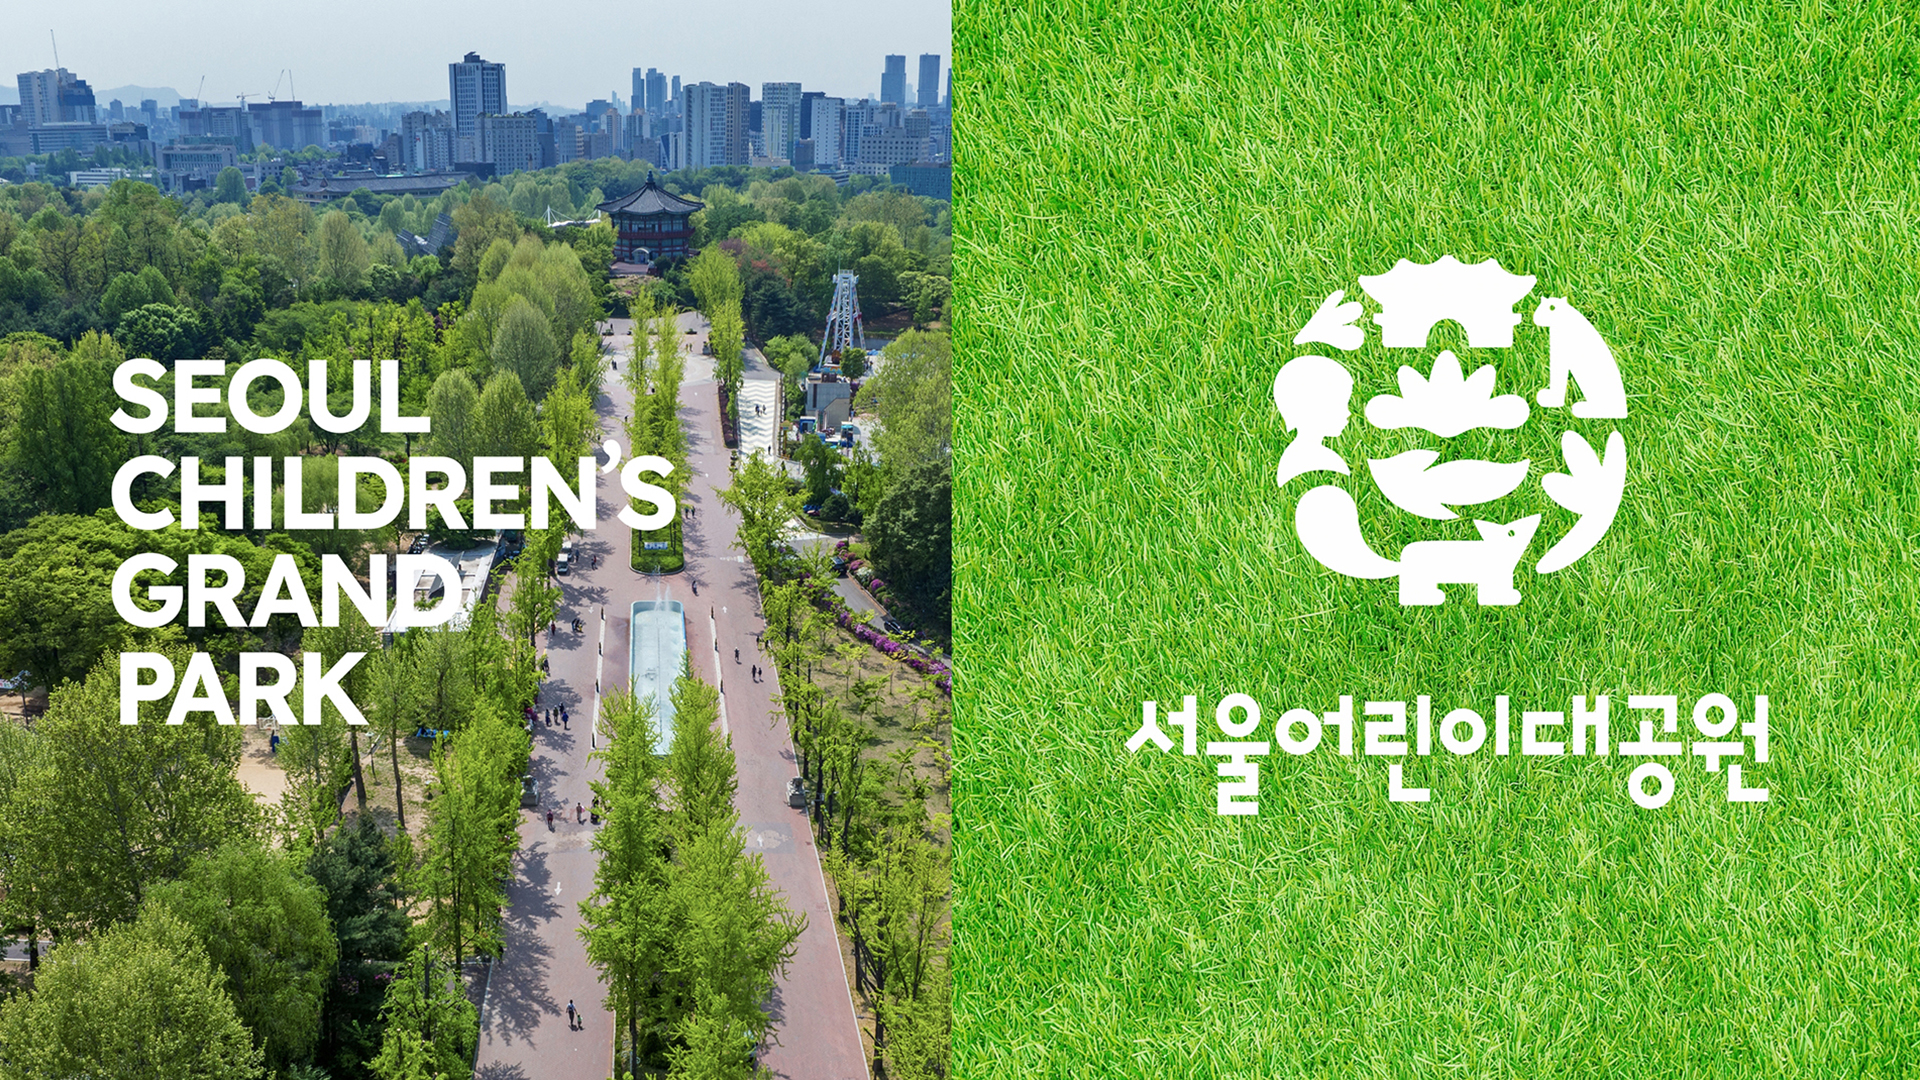 Seoul Children's Grand Park B.I.